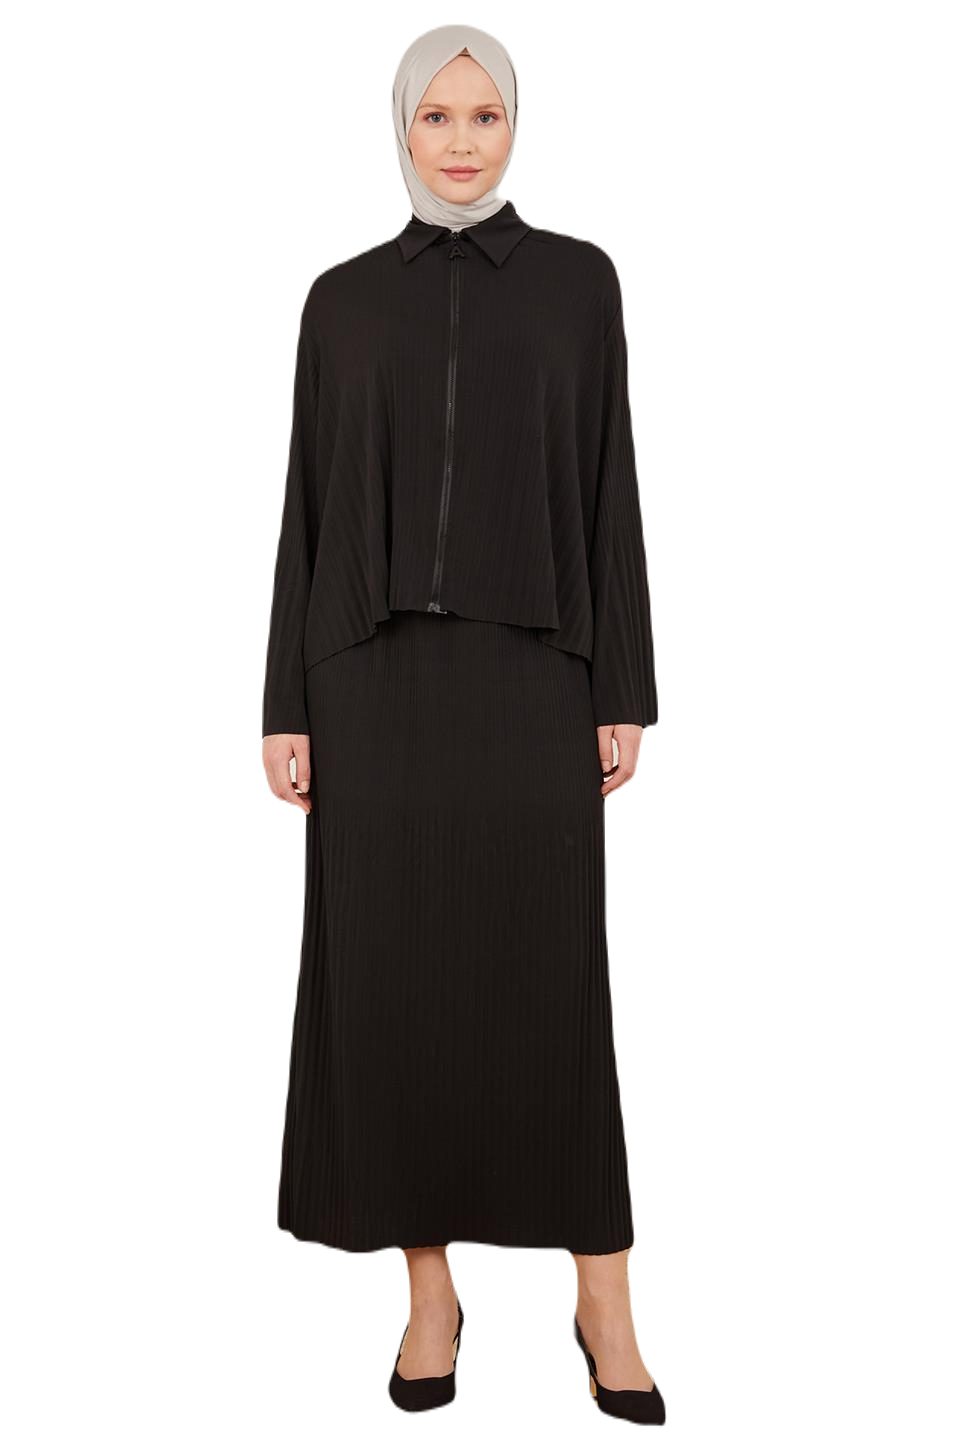 ARMİNE Business-Kostüm Armine Sandy Anzug mit Halbfaltenjacke – Moderne und elegante Hijab-Mo